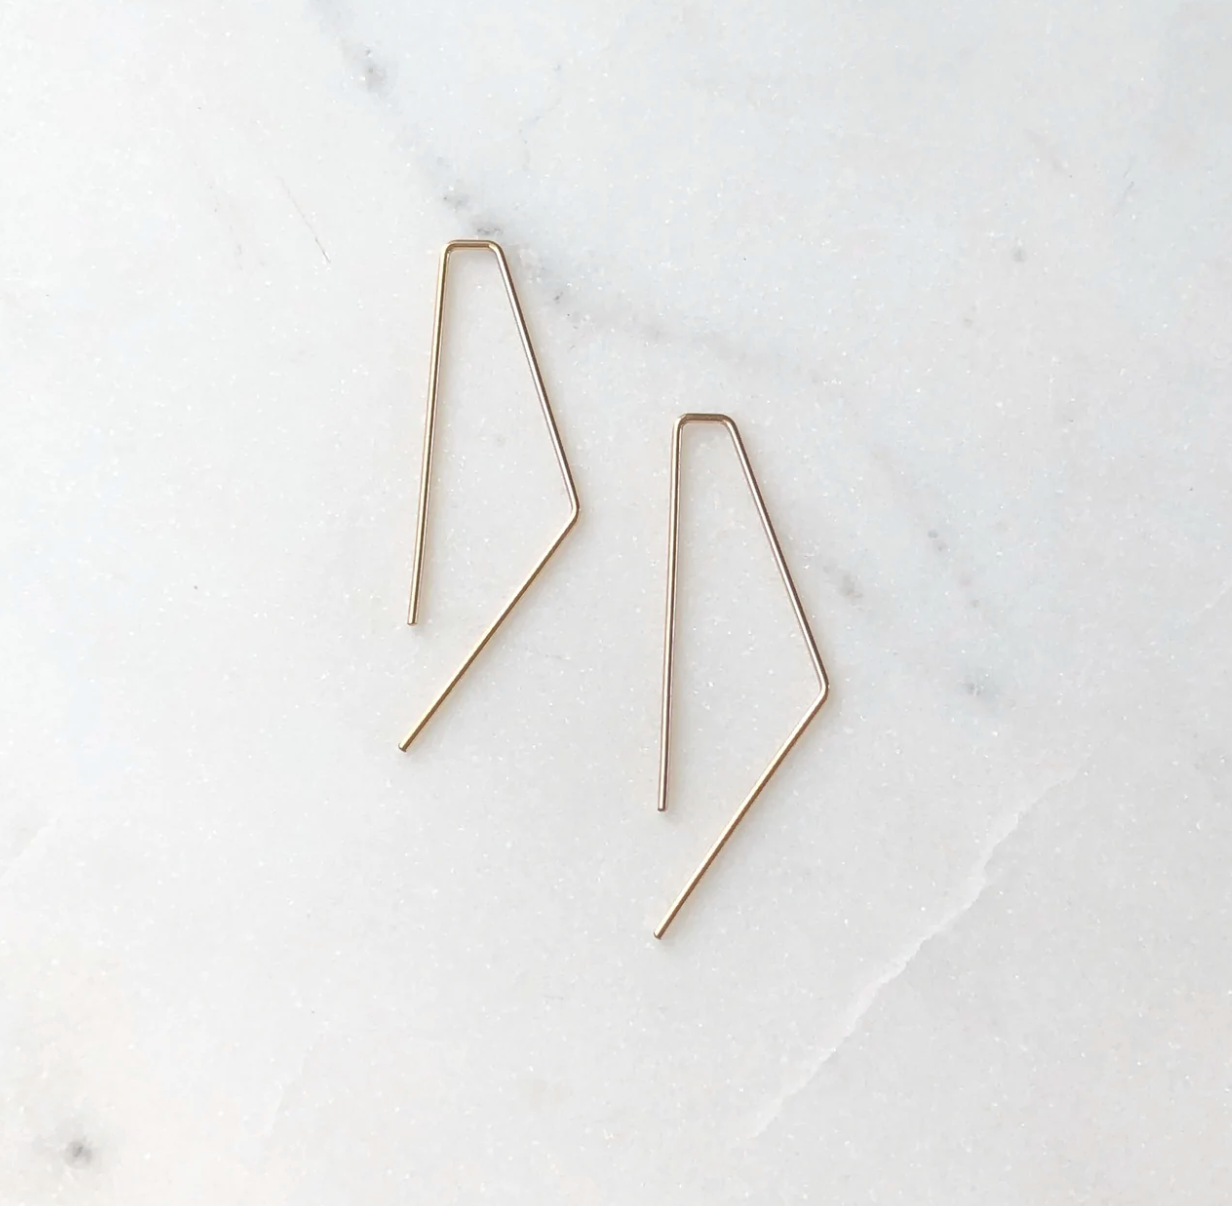 Bent Slide Earrings - 14K Gold Filled